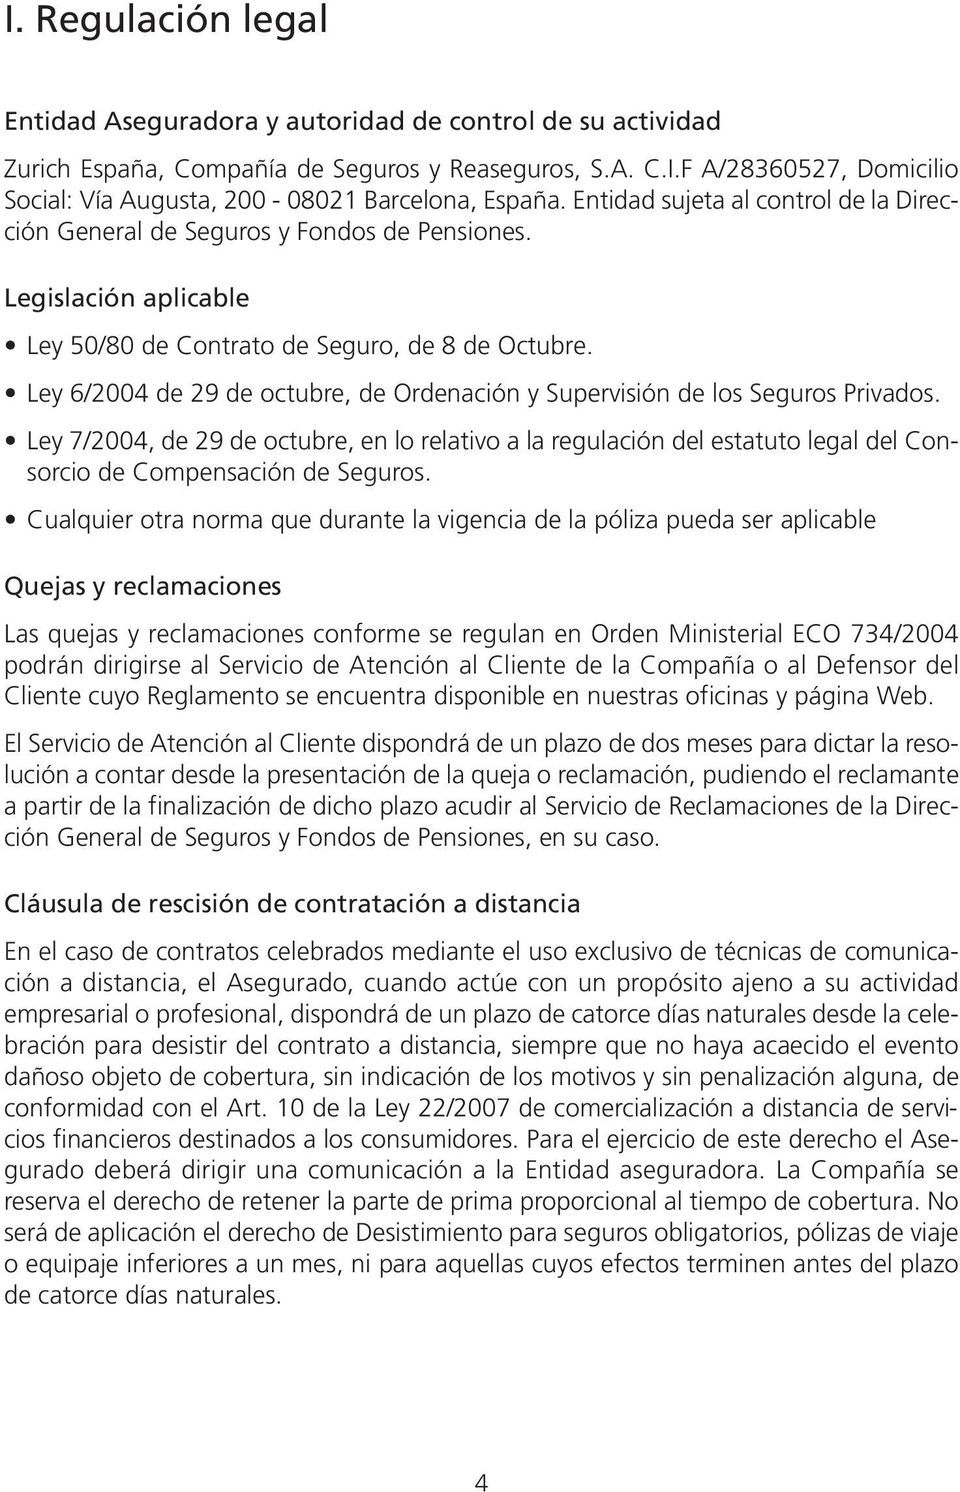 Ley 6/2004 de 29 de octubre, de Ordenación y Supervisión de los Seguros Privados.